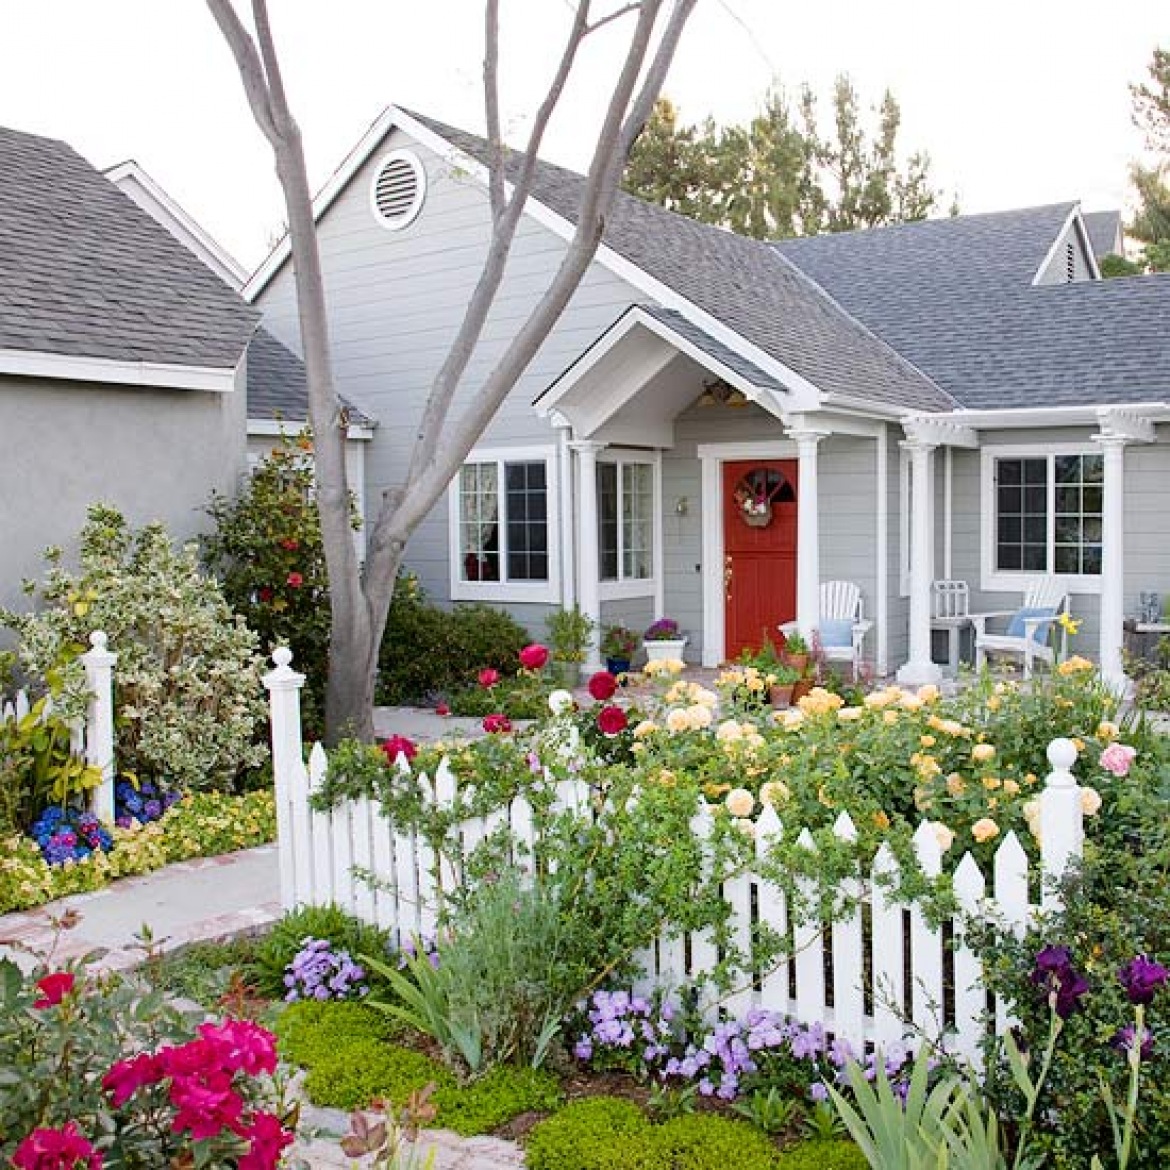 Фото цветов перед домом. Цветник перед домом. Красивый палисадник. Красивый цветник перед домом. Палисадн к перед домрм.